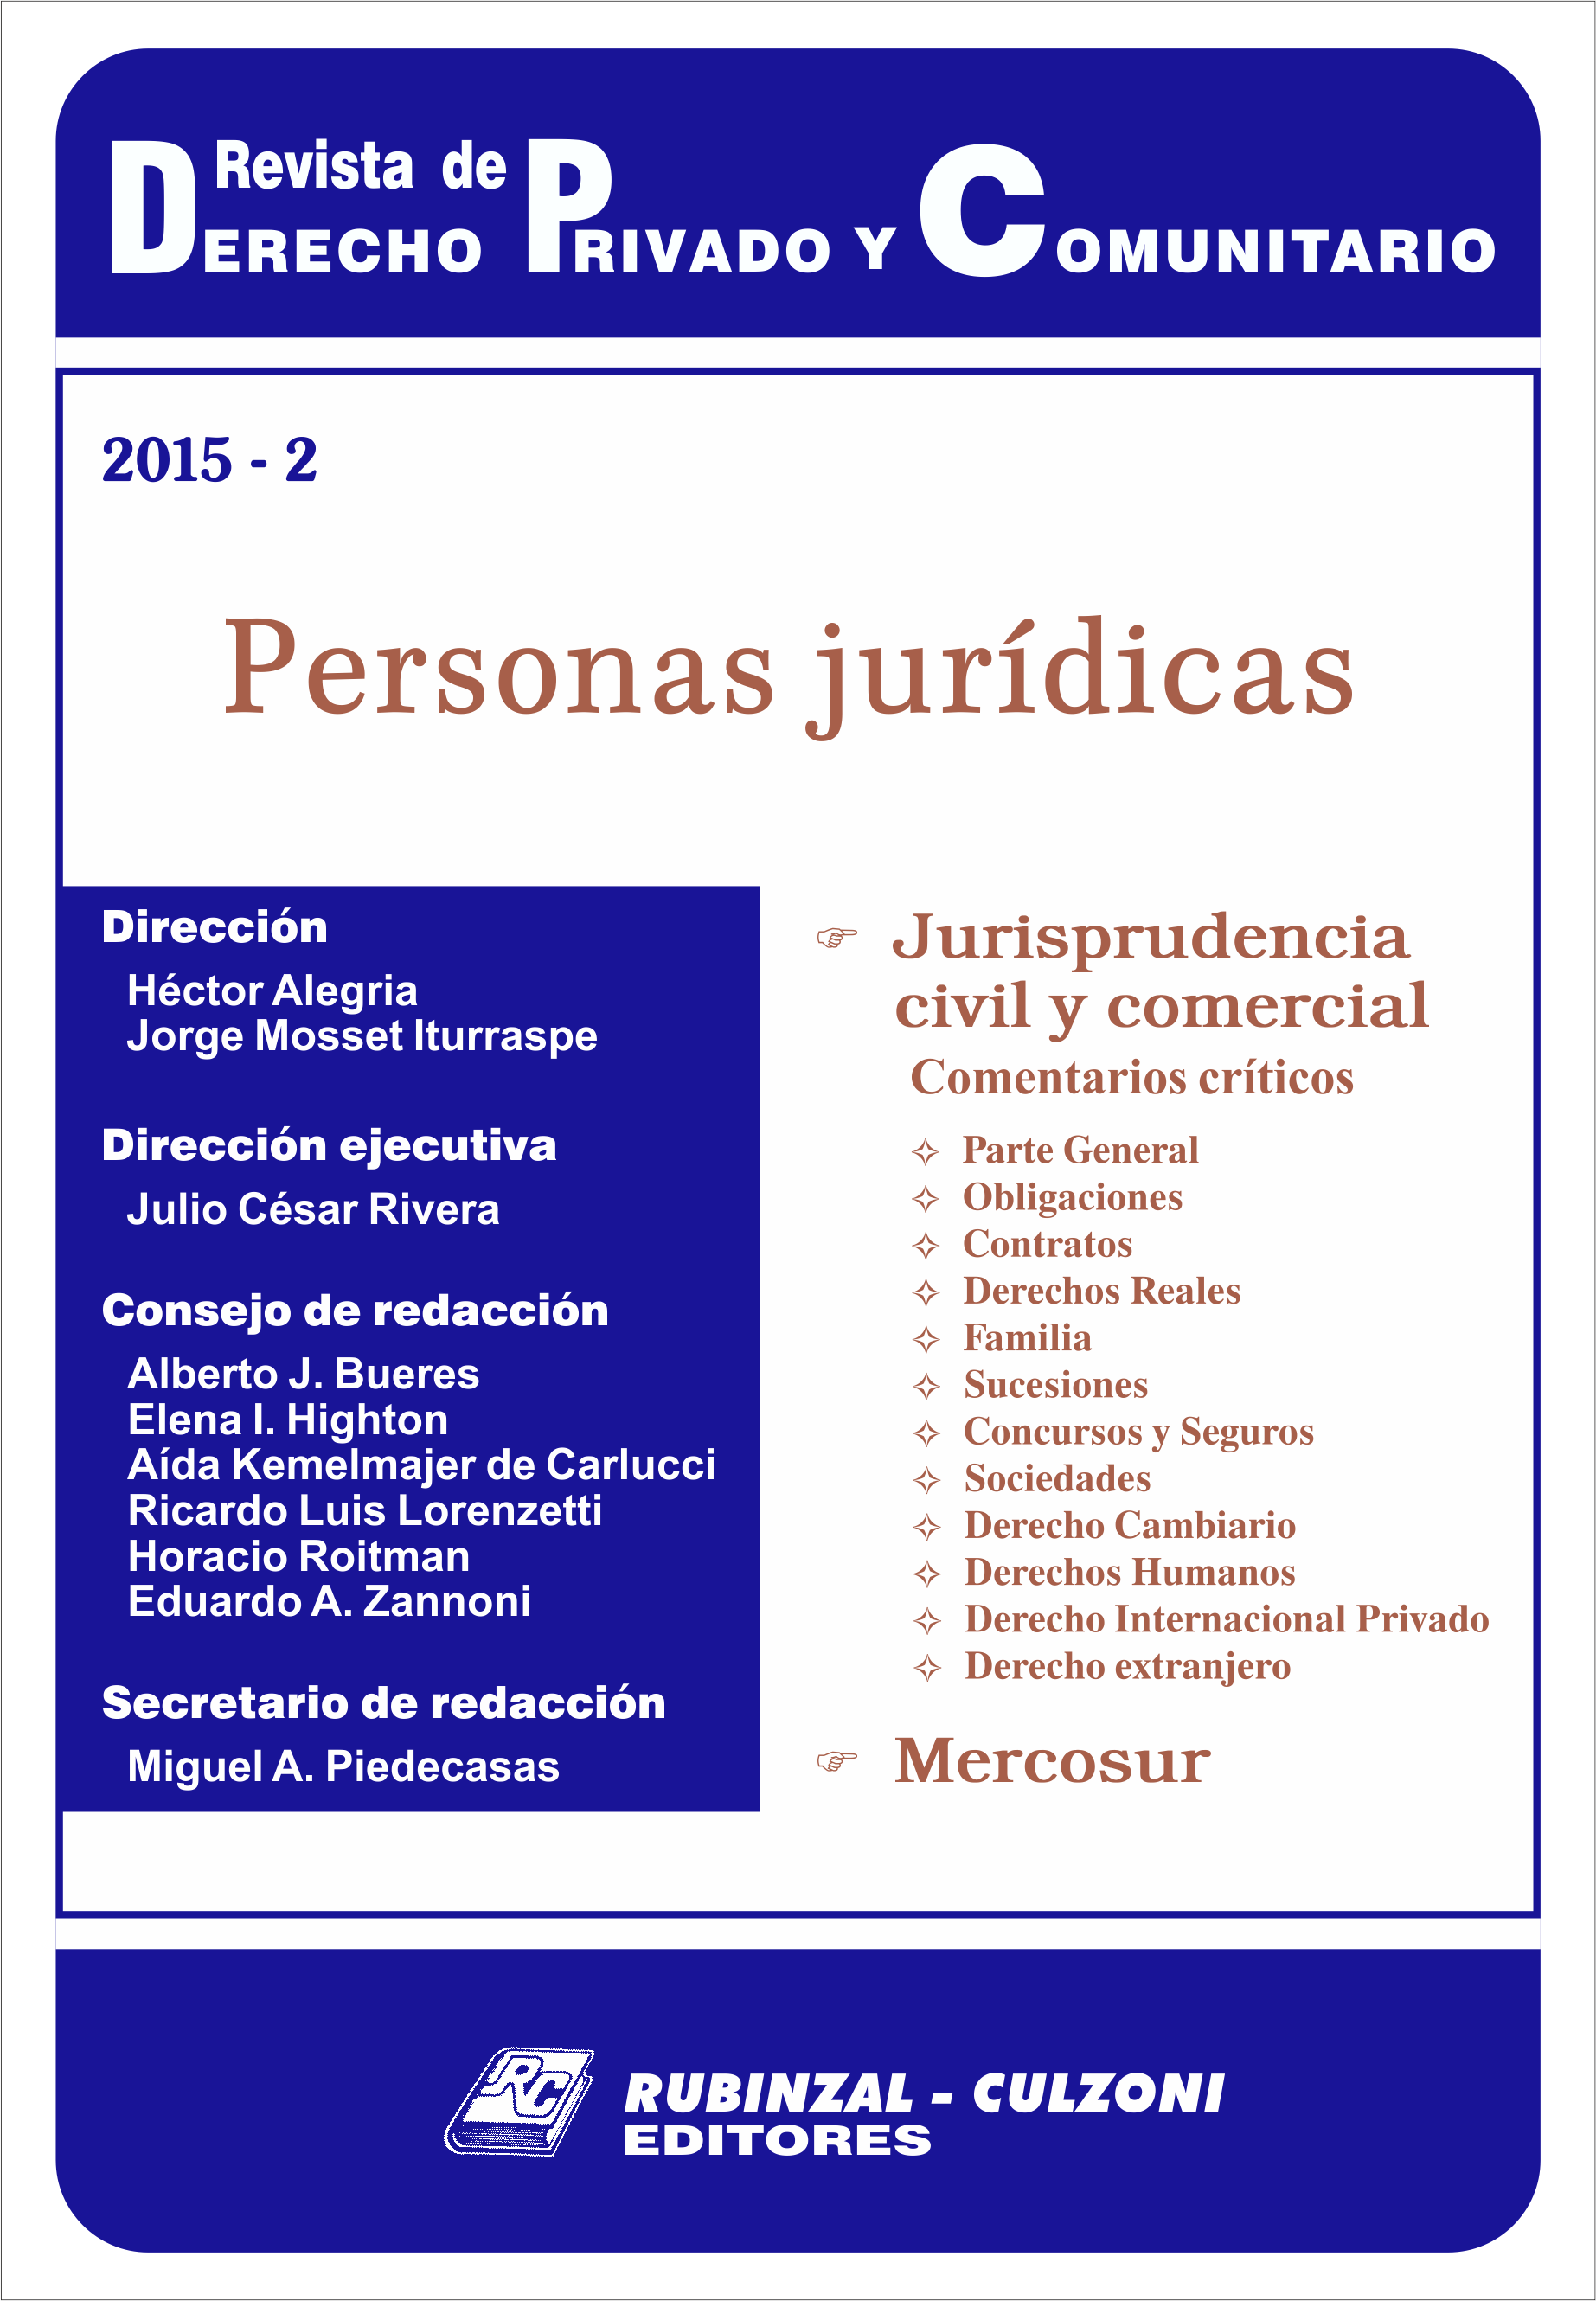 Revista de Derecho Privado y Comunitario - Personas Jurídicas